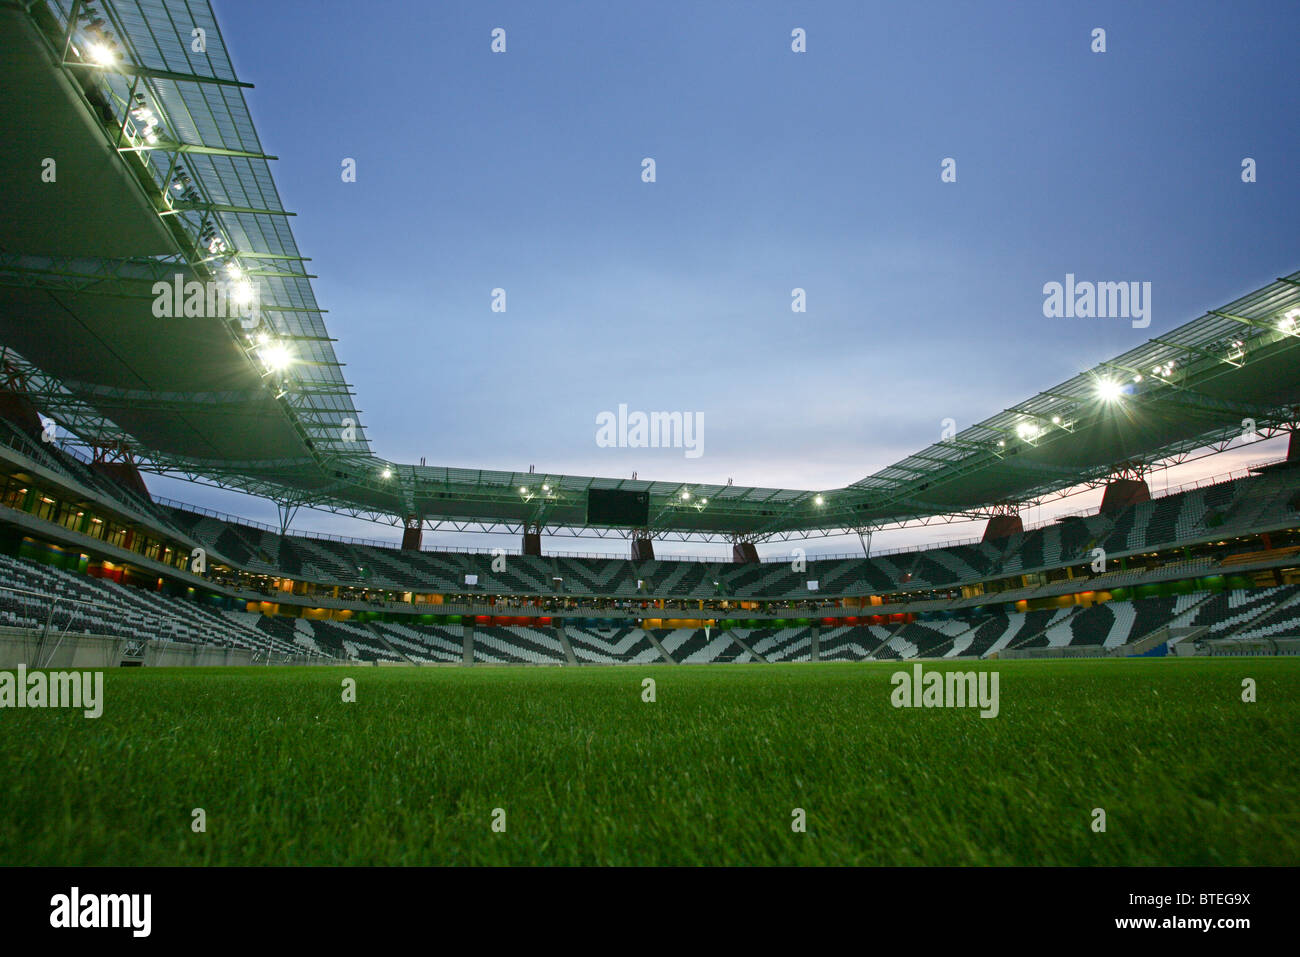 Das Mbombela-Stadion in der Dämmerung zeigt die Zebra-gestreiften Sitzplätze Innenraum ein einen üppigen, grünen, Spielfläche Stockfoto